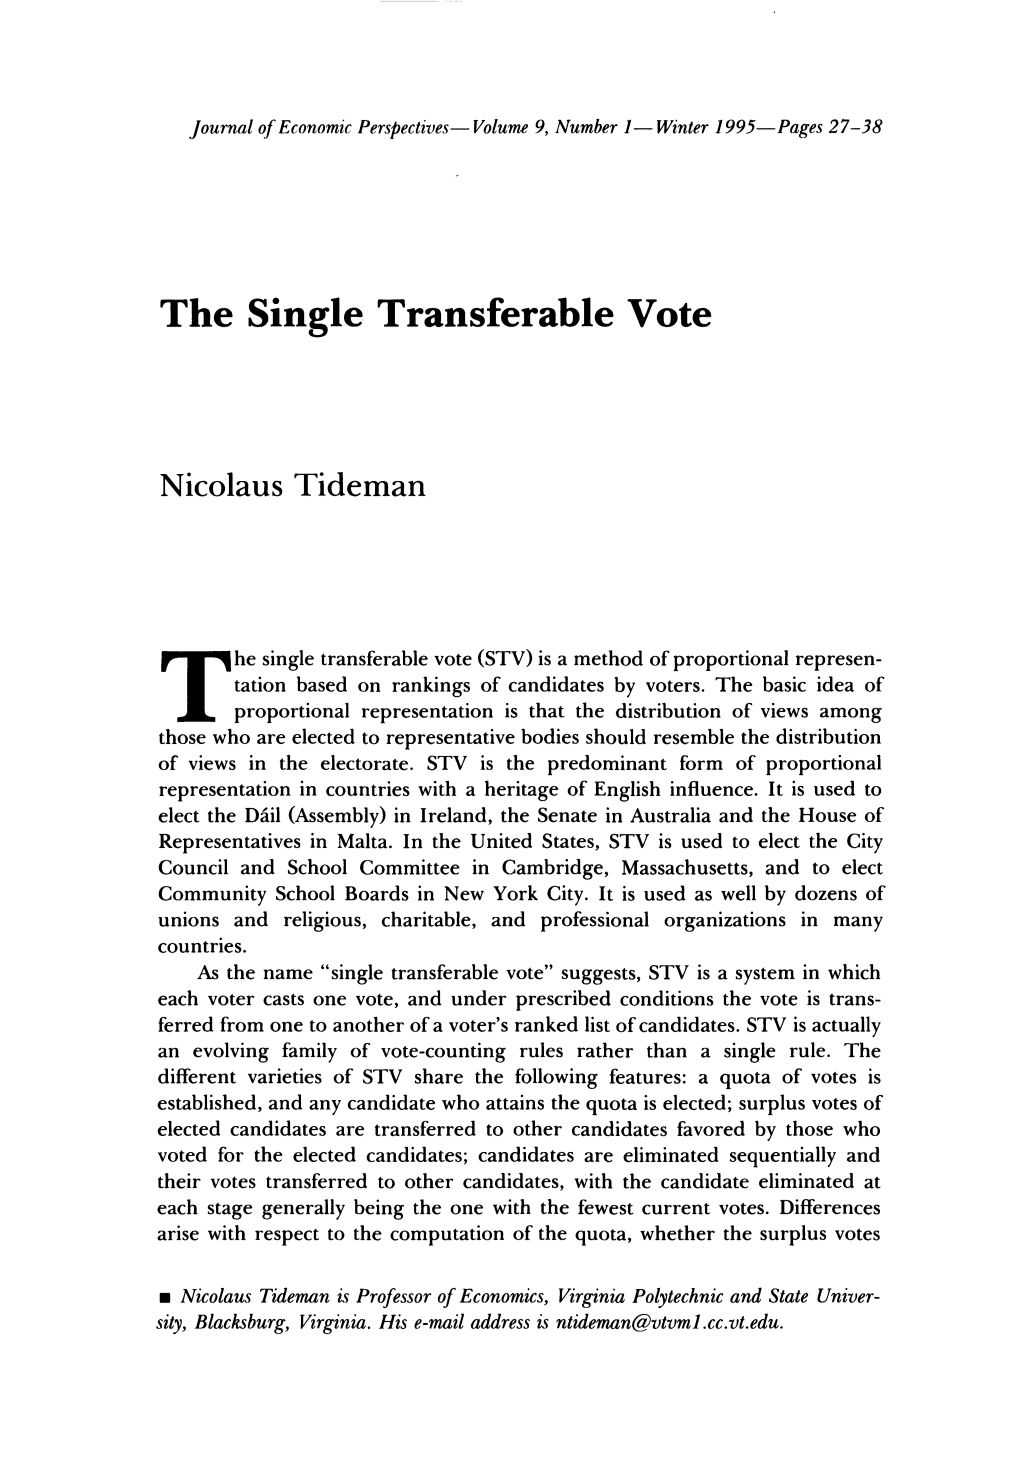 The Single Transferable Vote